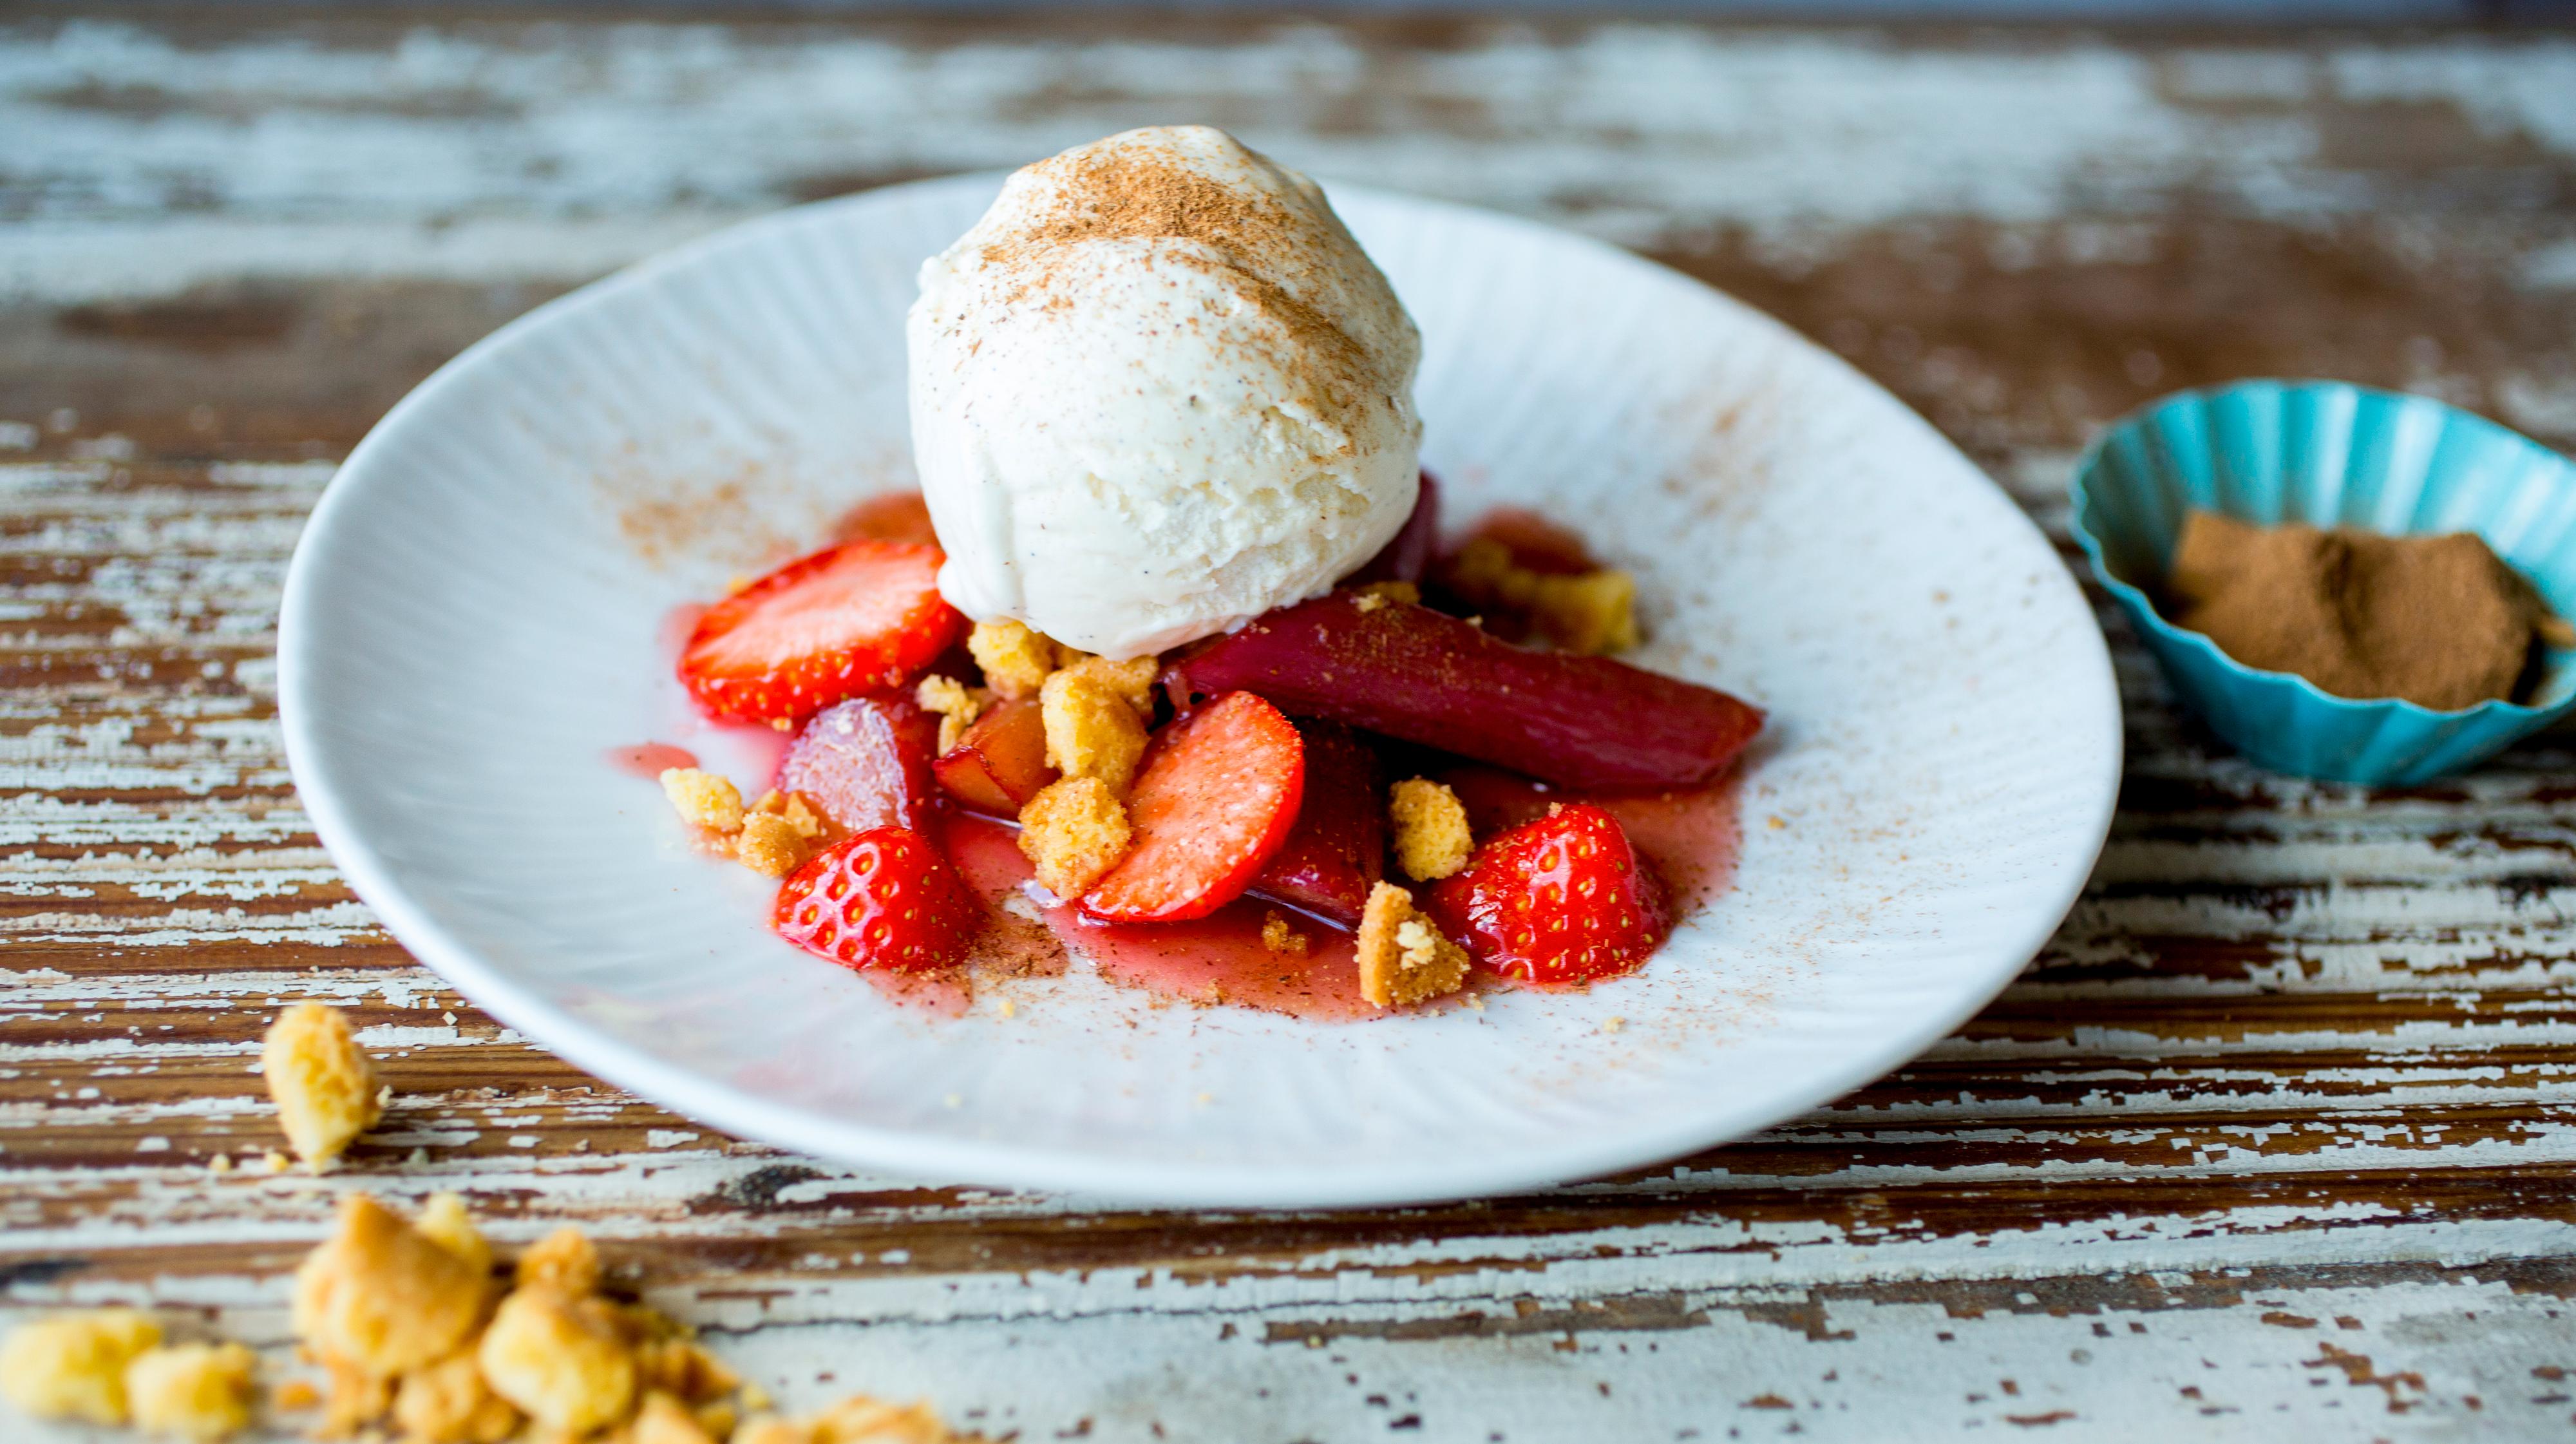 karamellisert rabarbra med jordbær, is og kanel på hvit tallerken